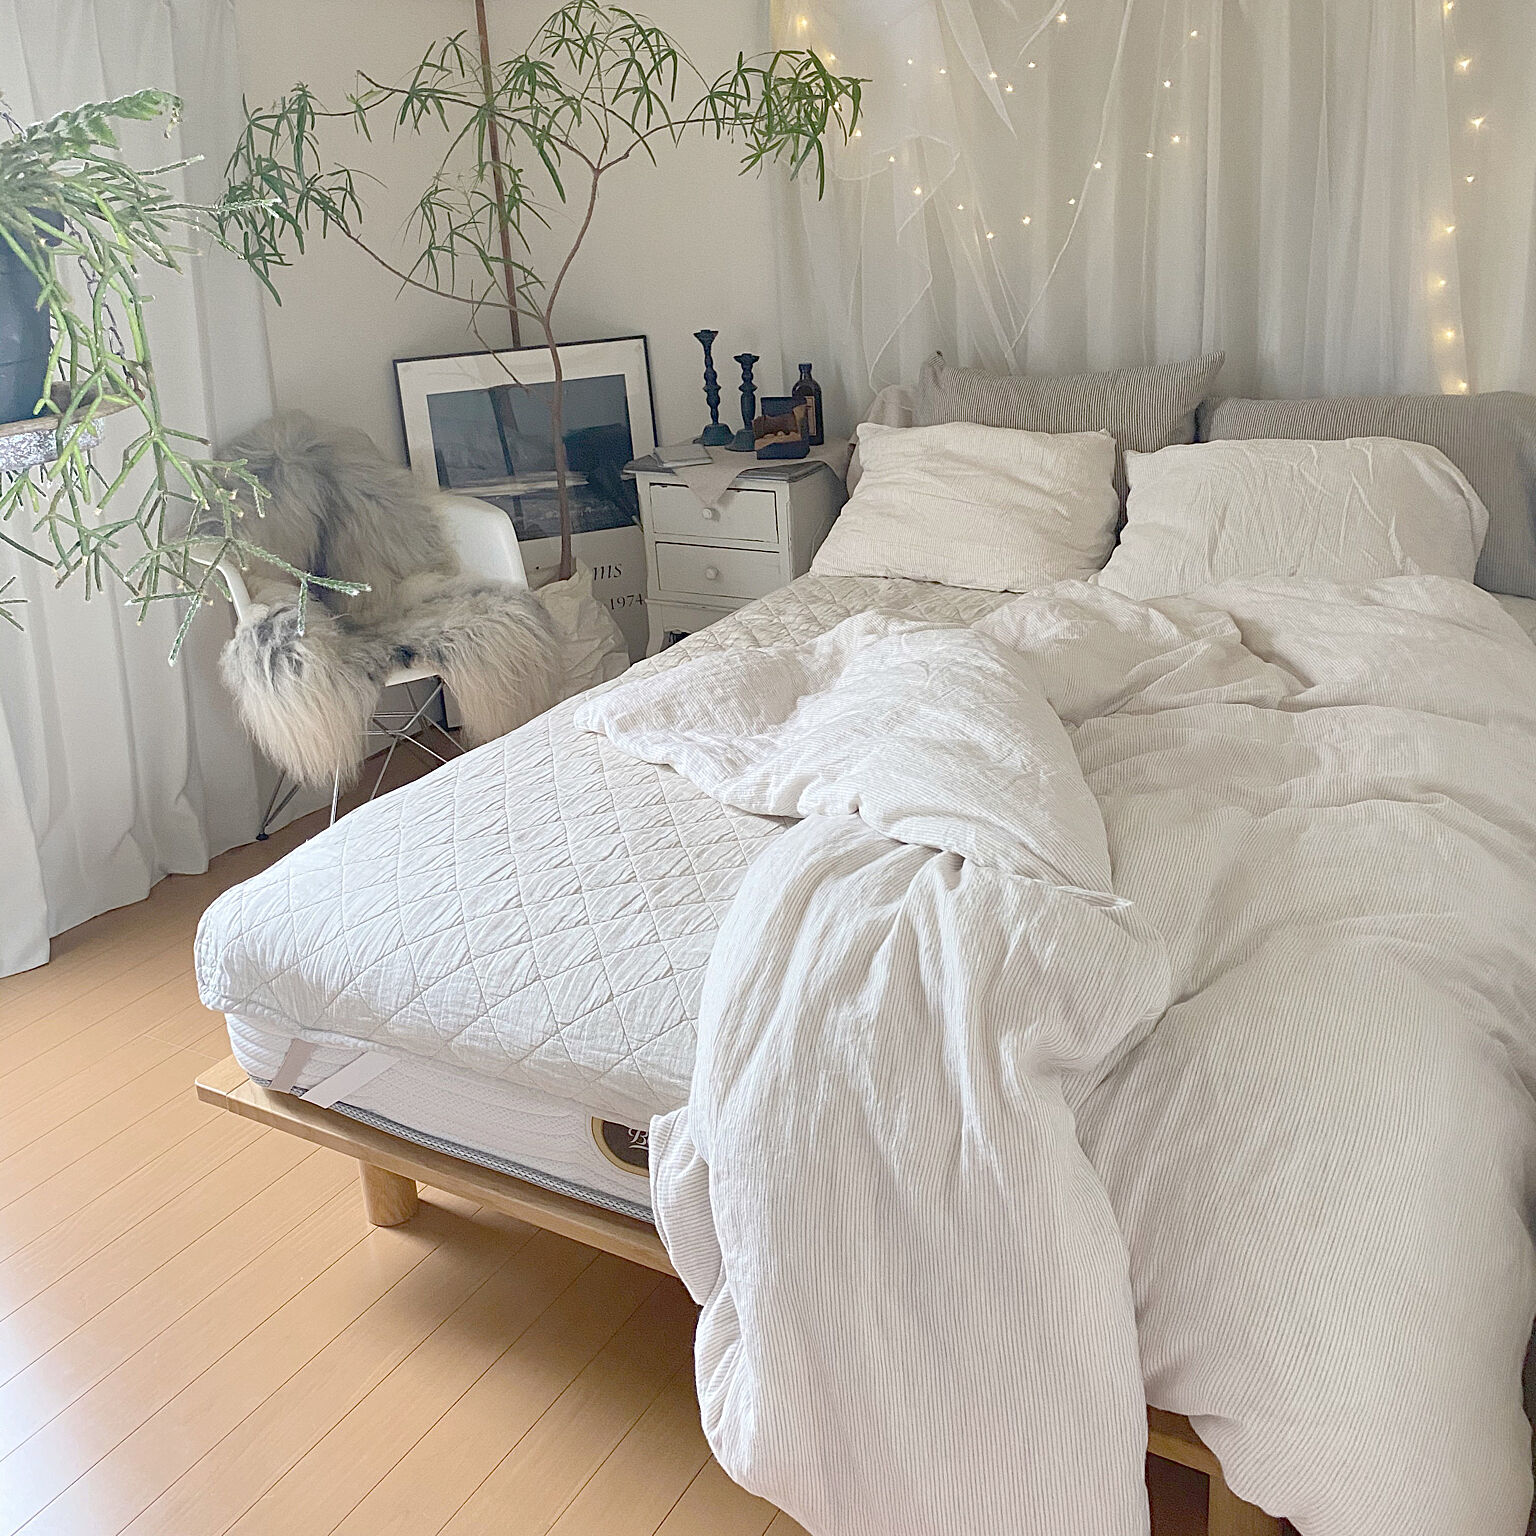 私にピッタリの寝心地を♡みんなが選んだマットレス10選 | RoomClip